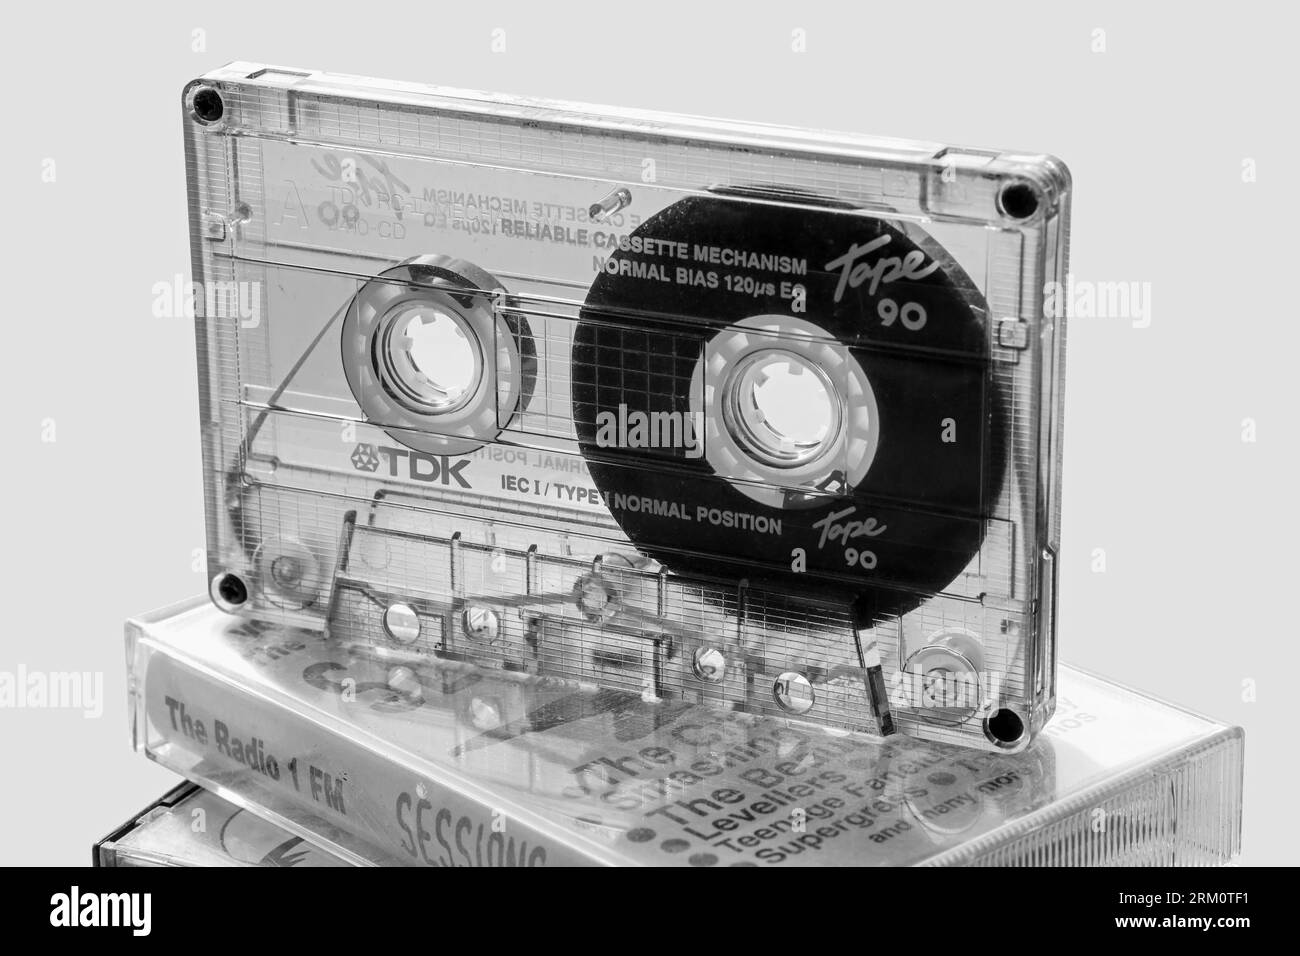 L'image monochrome du boîtier transparent d'une cassette compacte TDK montre la disposition interne complexe. Cassettes audio compactes populaires pour la maison reco Banque D'Images